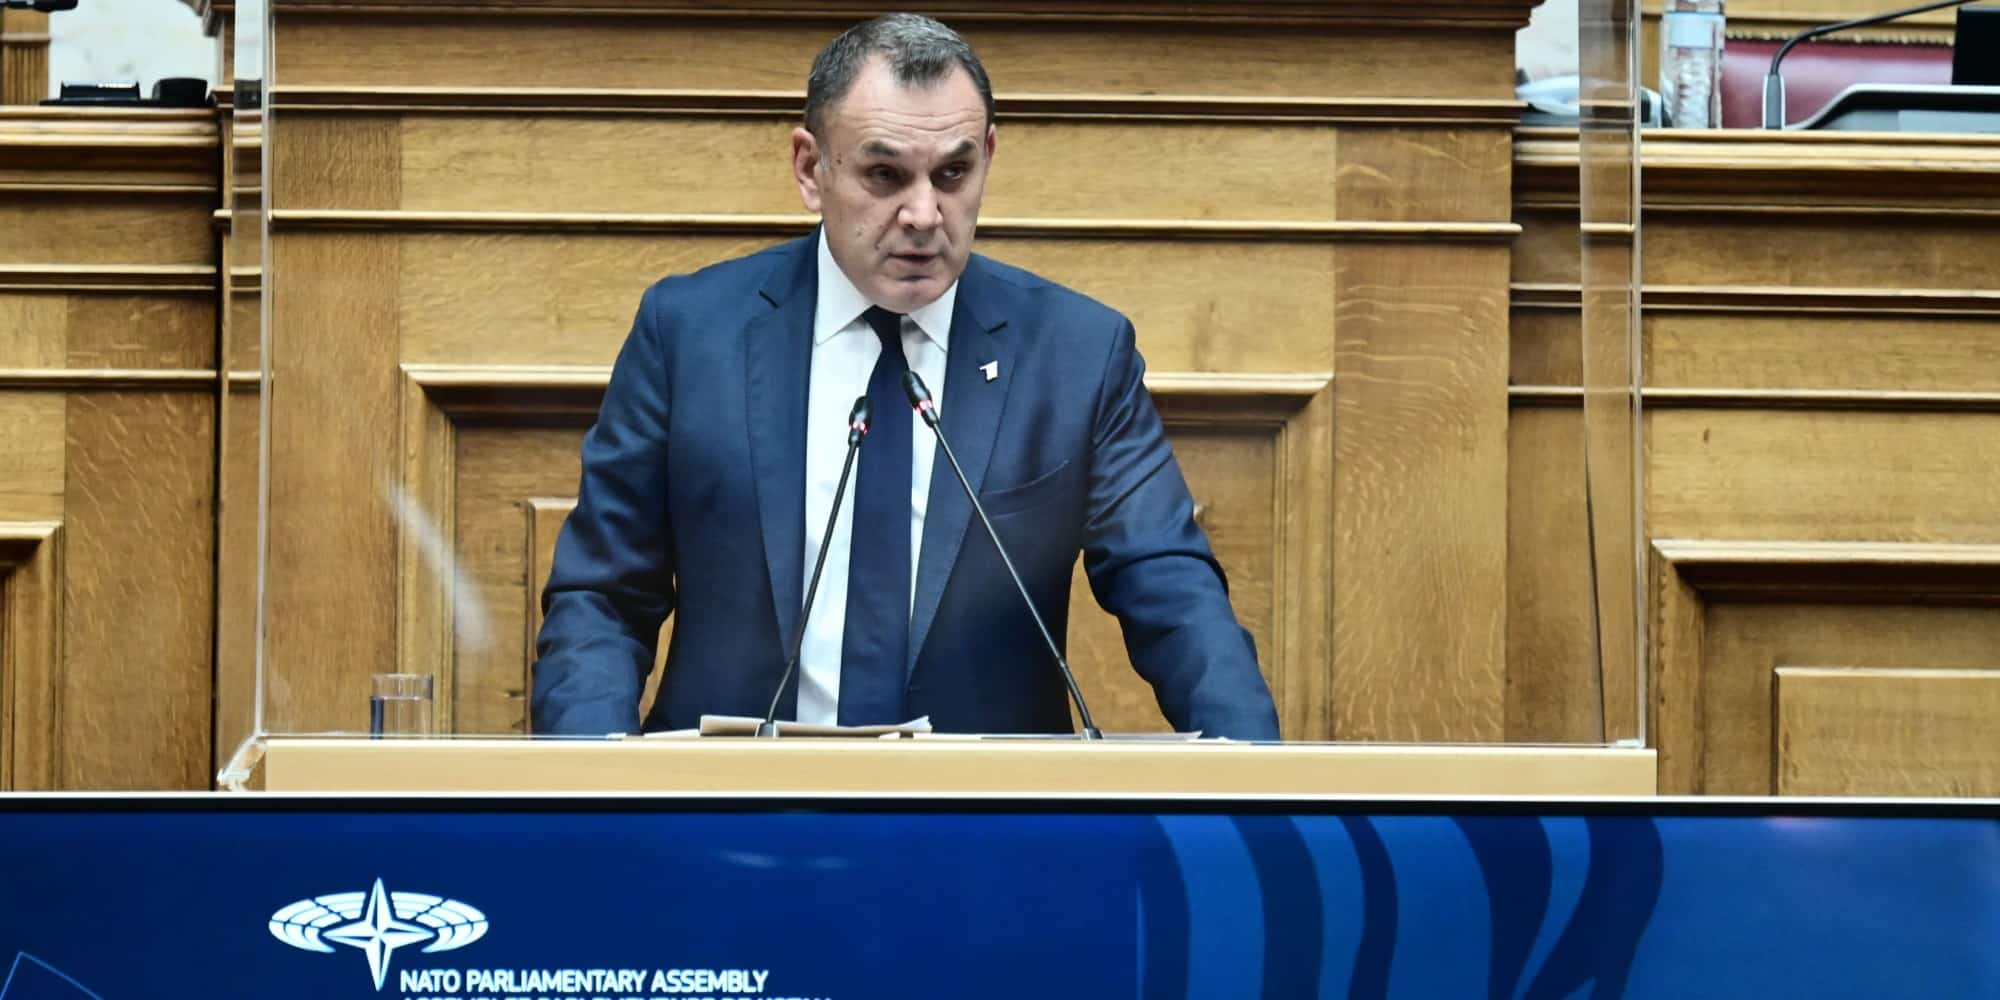 Ο υπουργός Εθνικής Άμυνας Νίκος Παναγιωτόπουλος